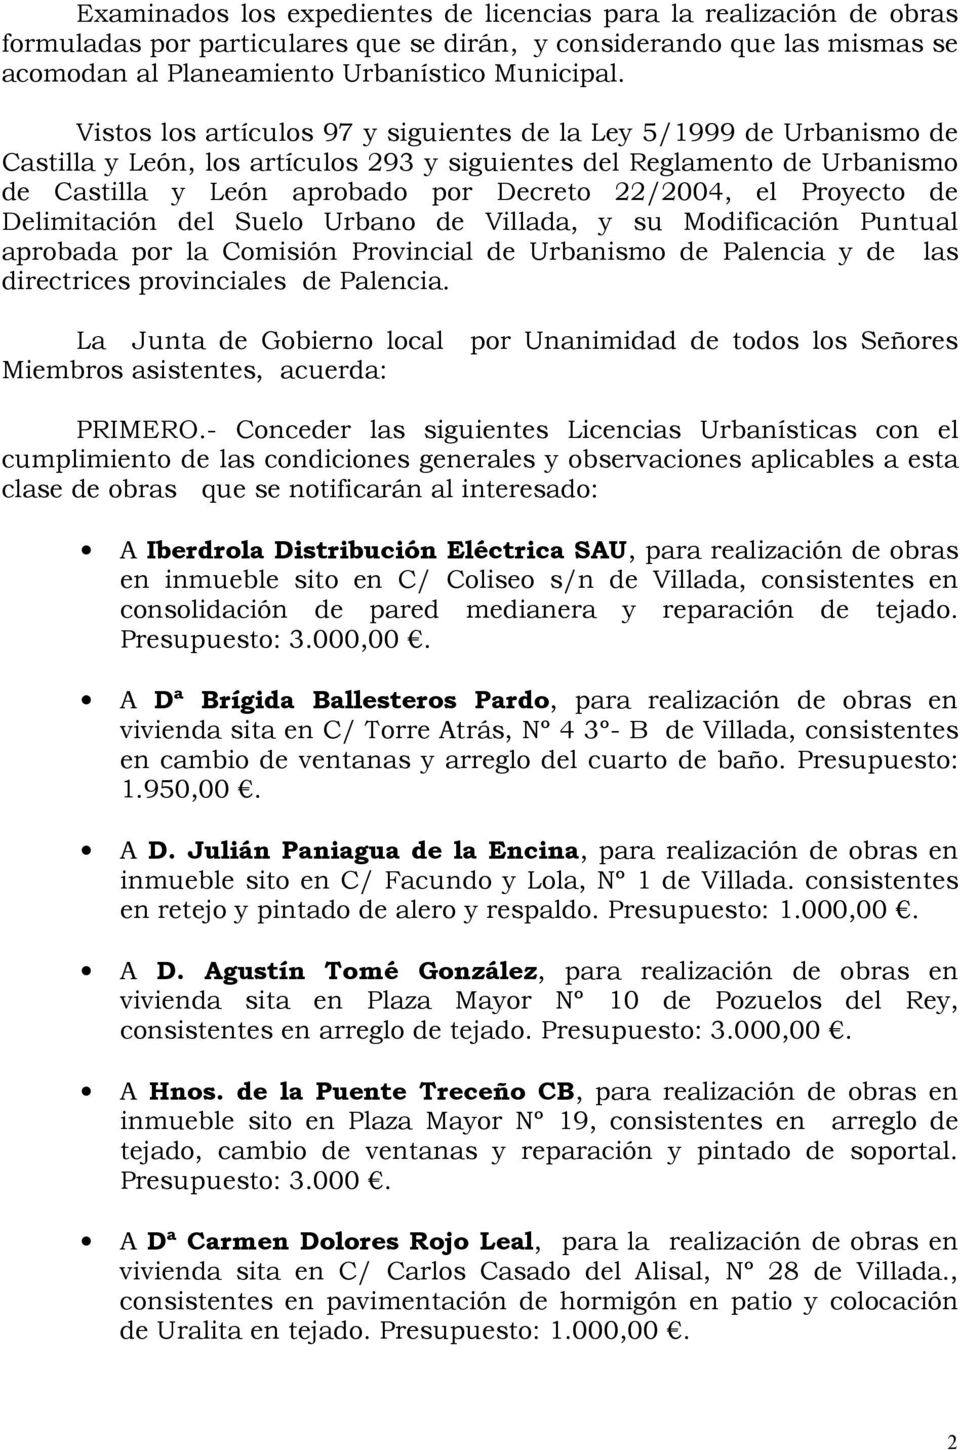 Proyecto de Delimitación del Suelo Urbano de Villada, y su Modificación Puntual aprobada por la Comisión Provincial de Urbanismo de Palencia y de las directrices provinciales de Palencia.